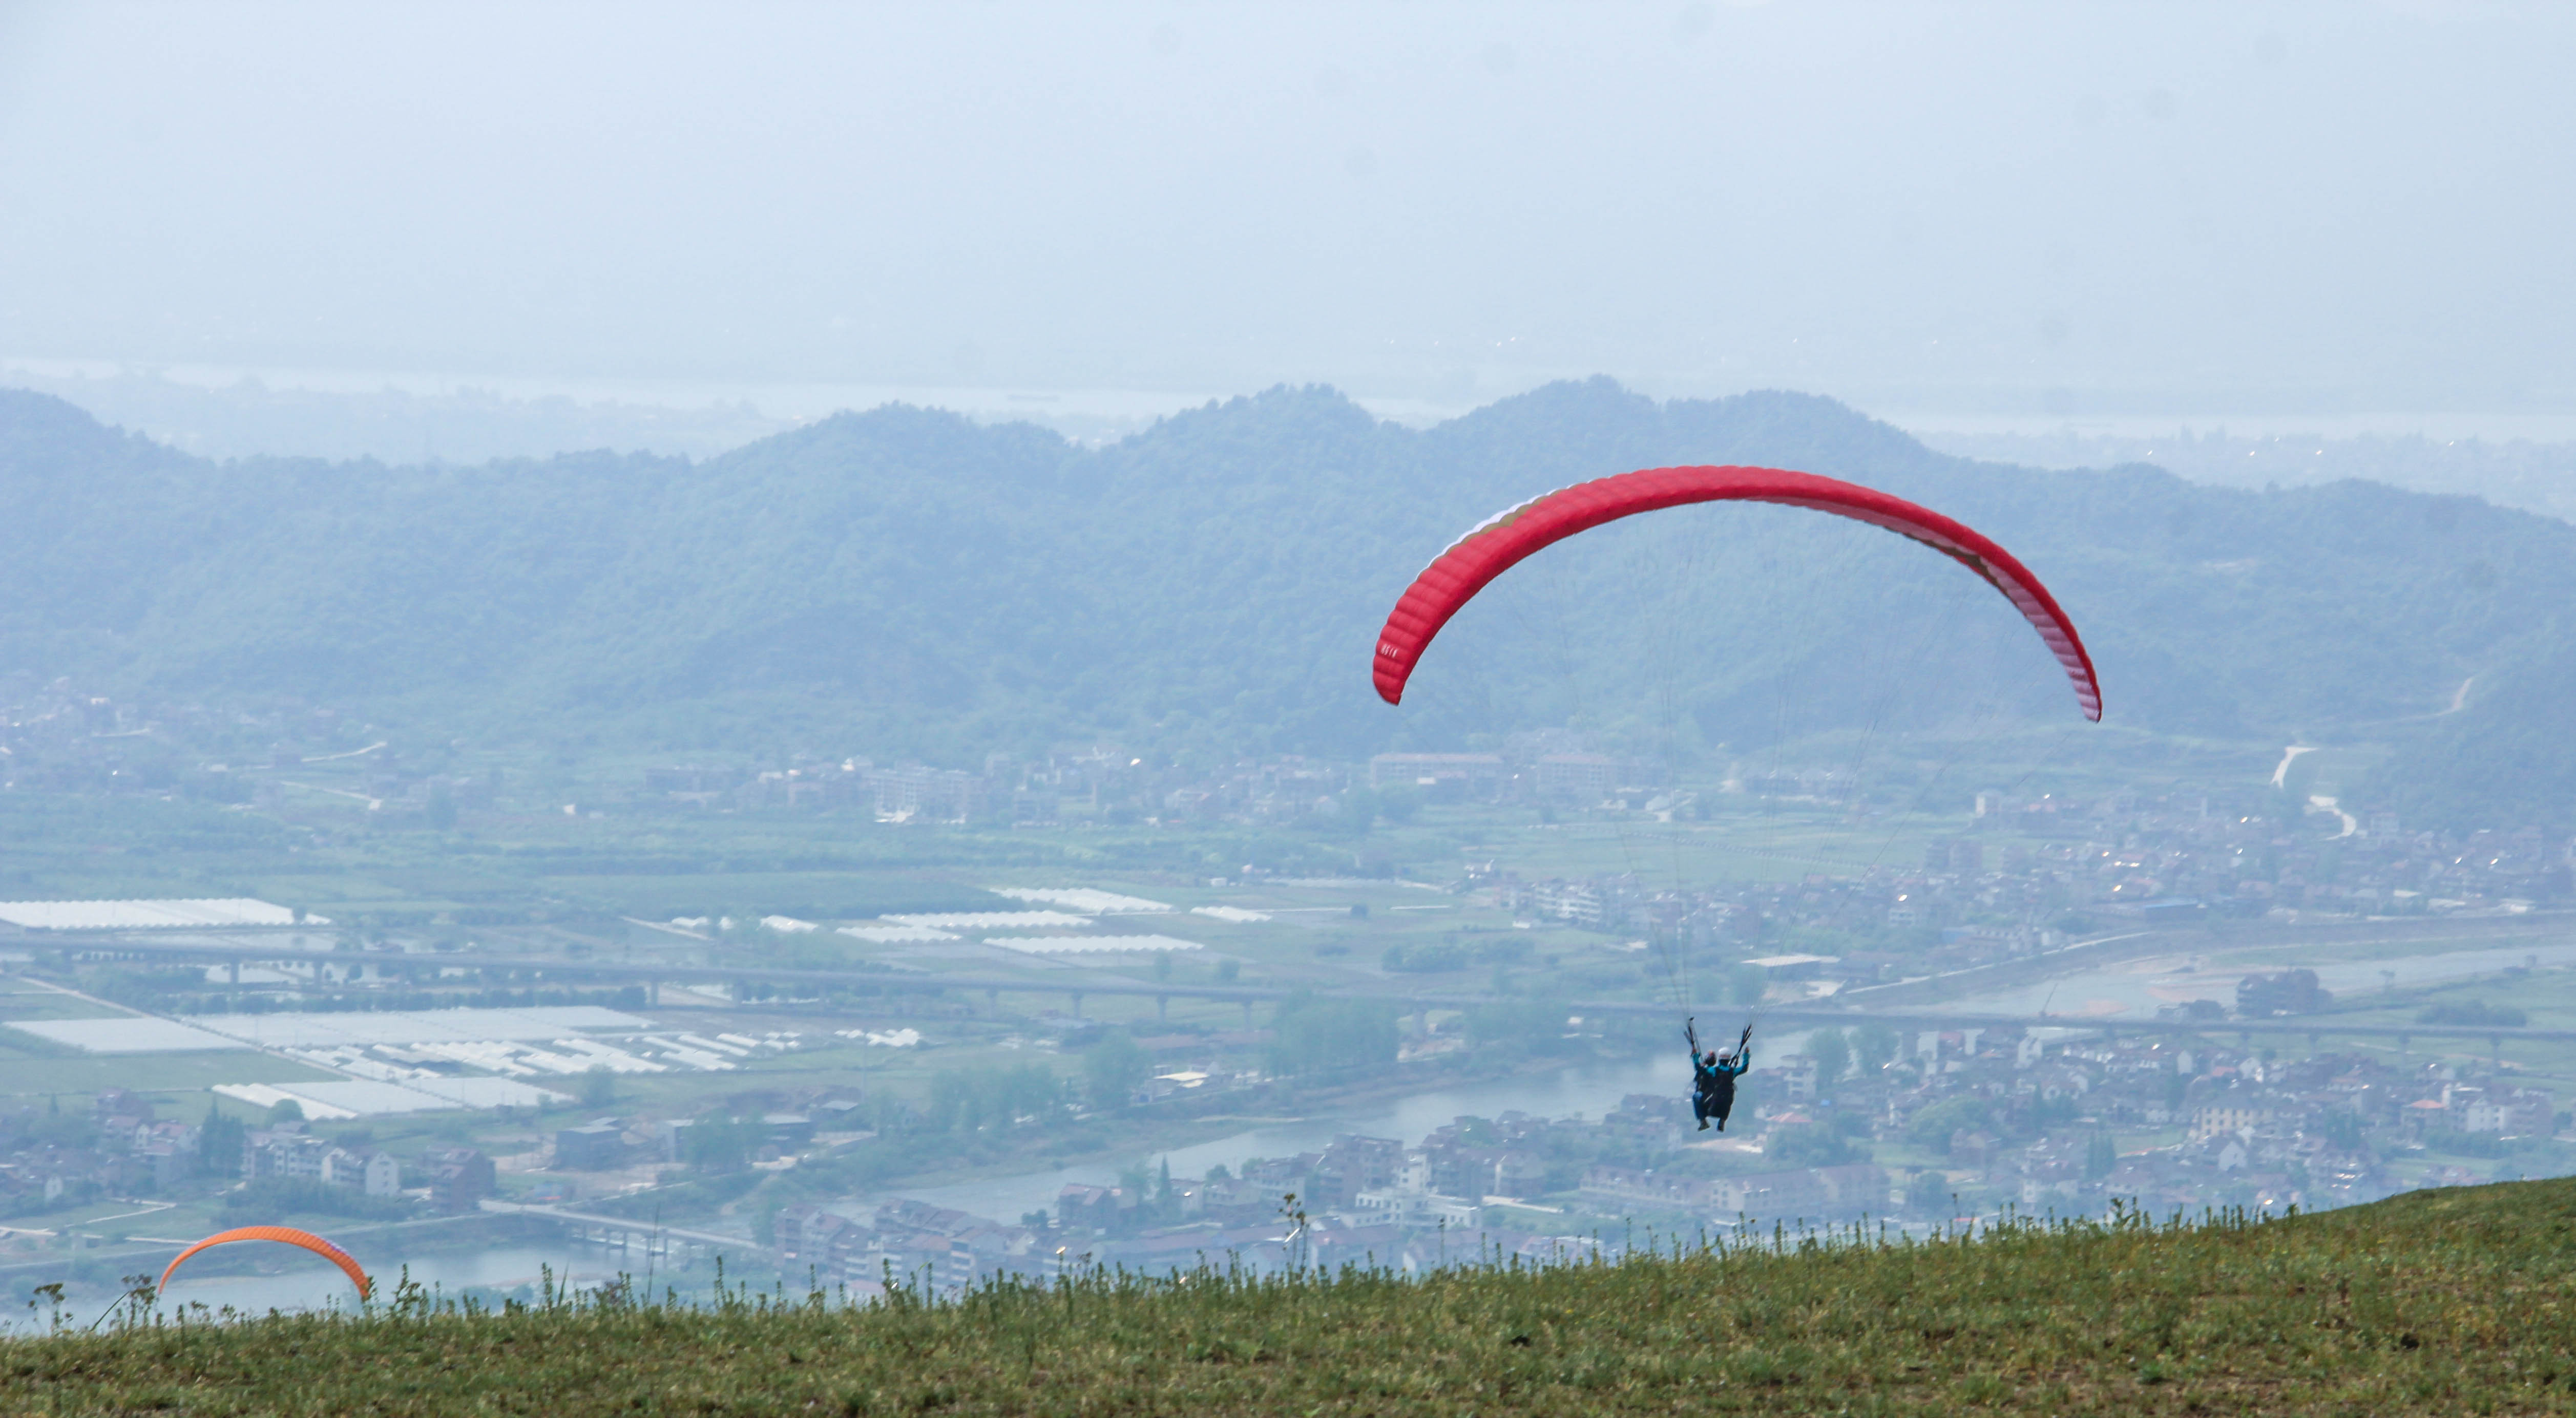 天气又晴好的一个周六,和几个公司同事一起到永安山的滑翔伞基地野营